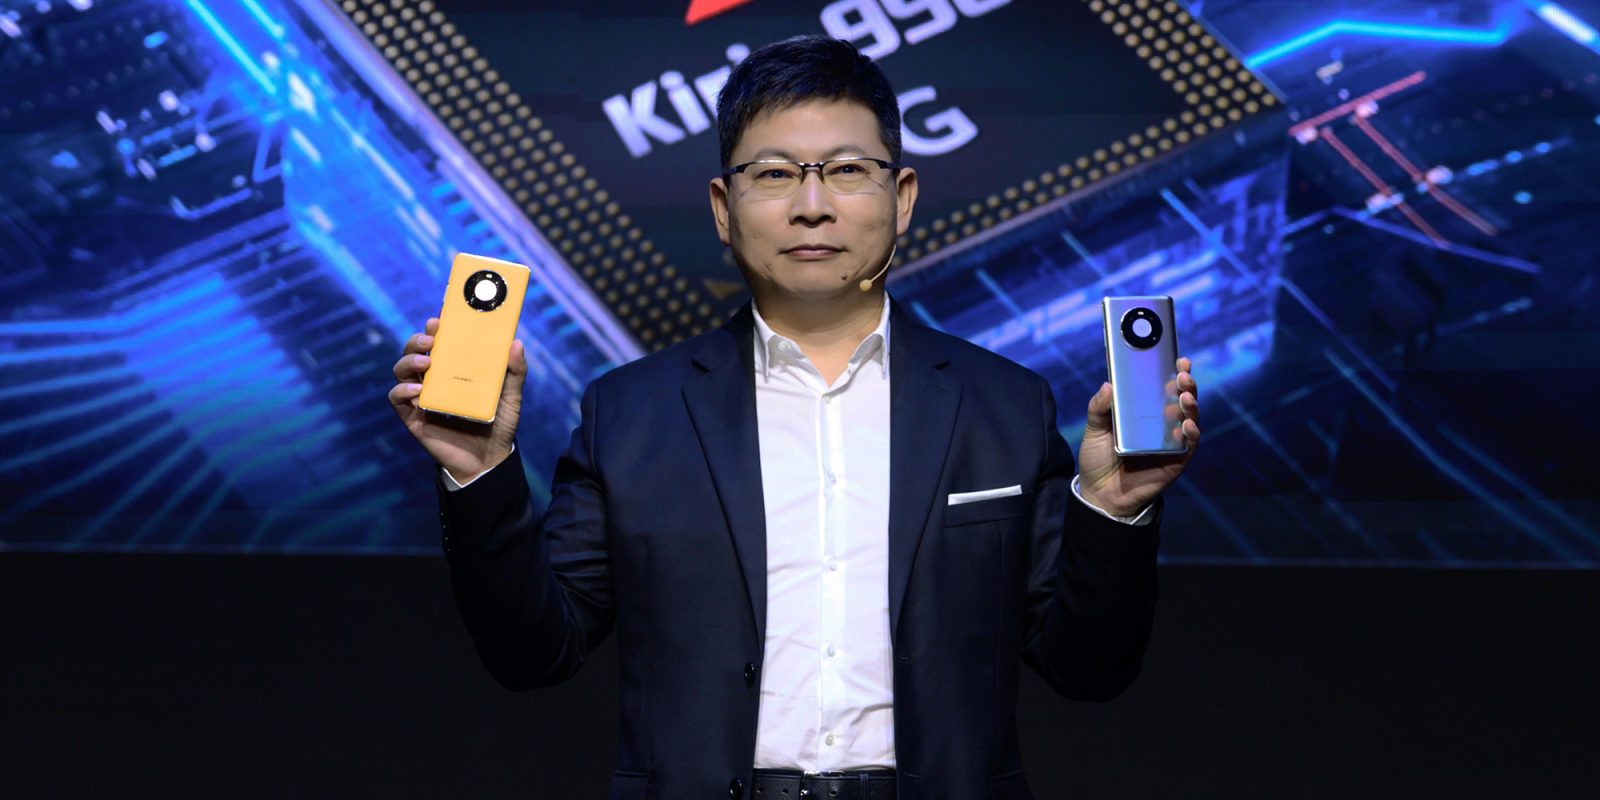 Huawei Mate 40 Pro launch